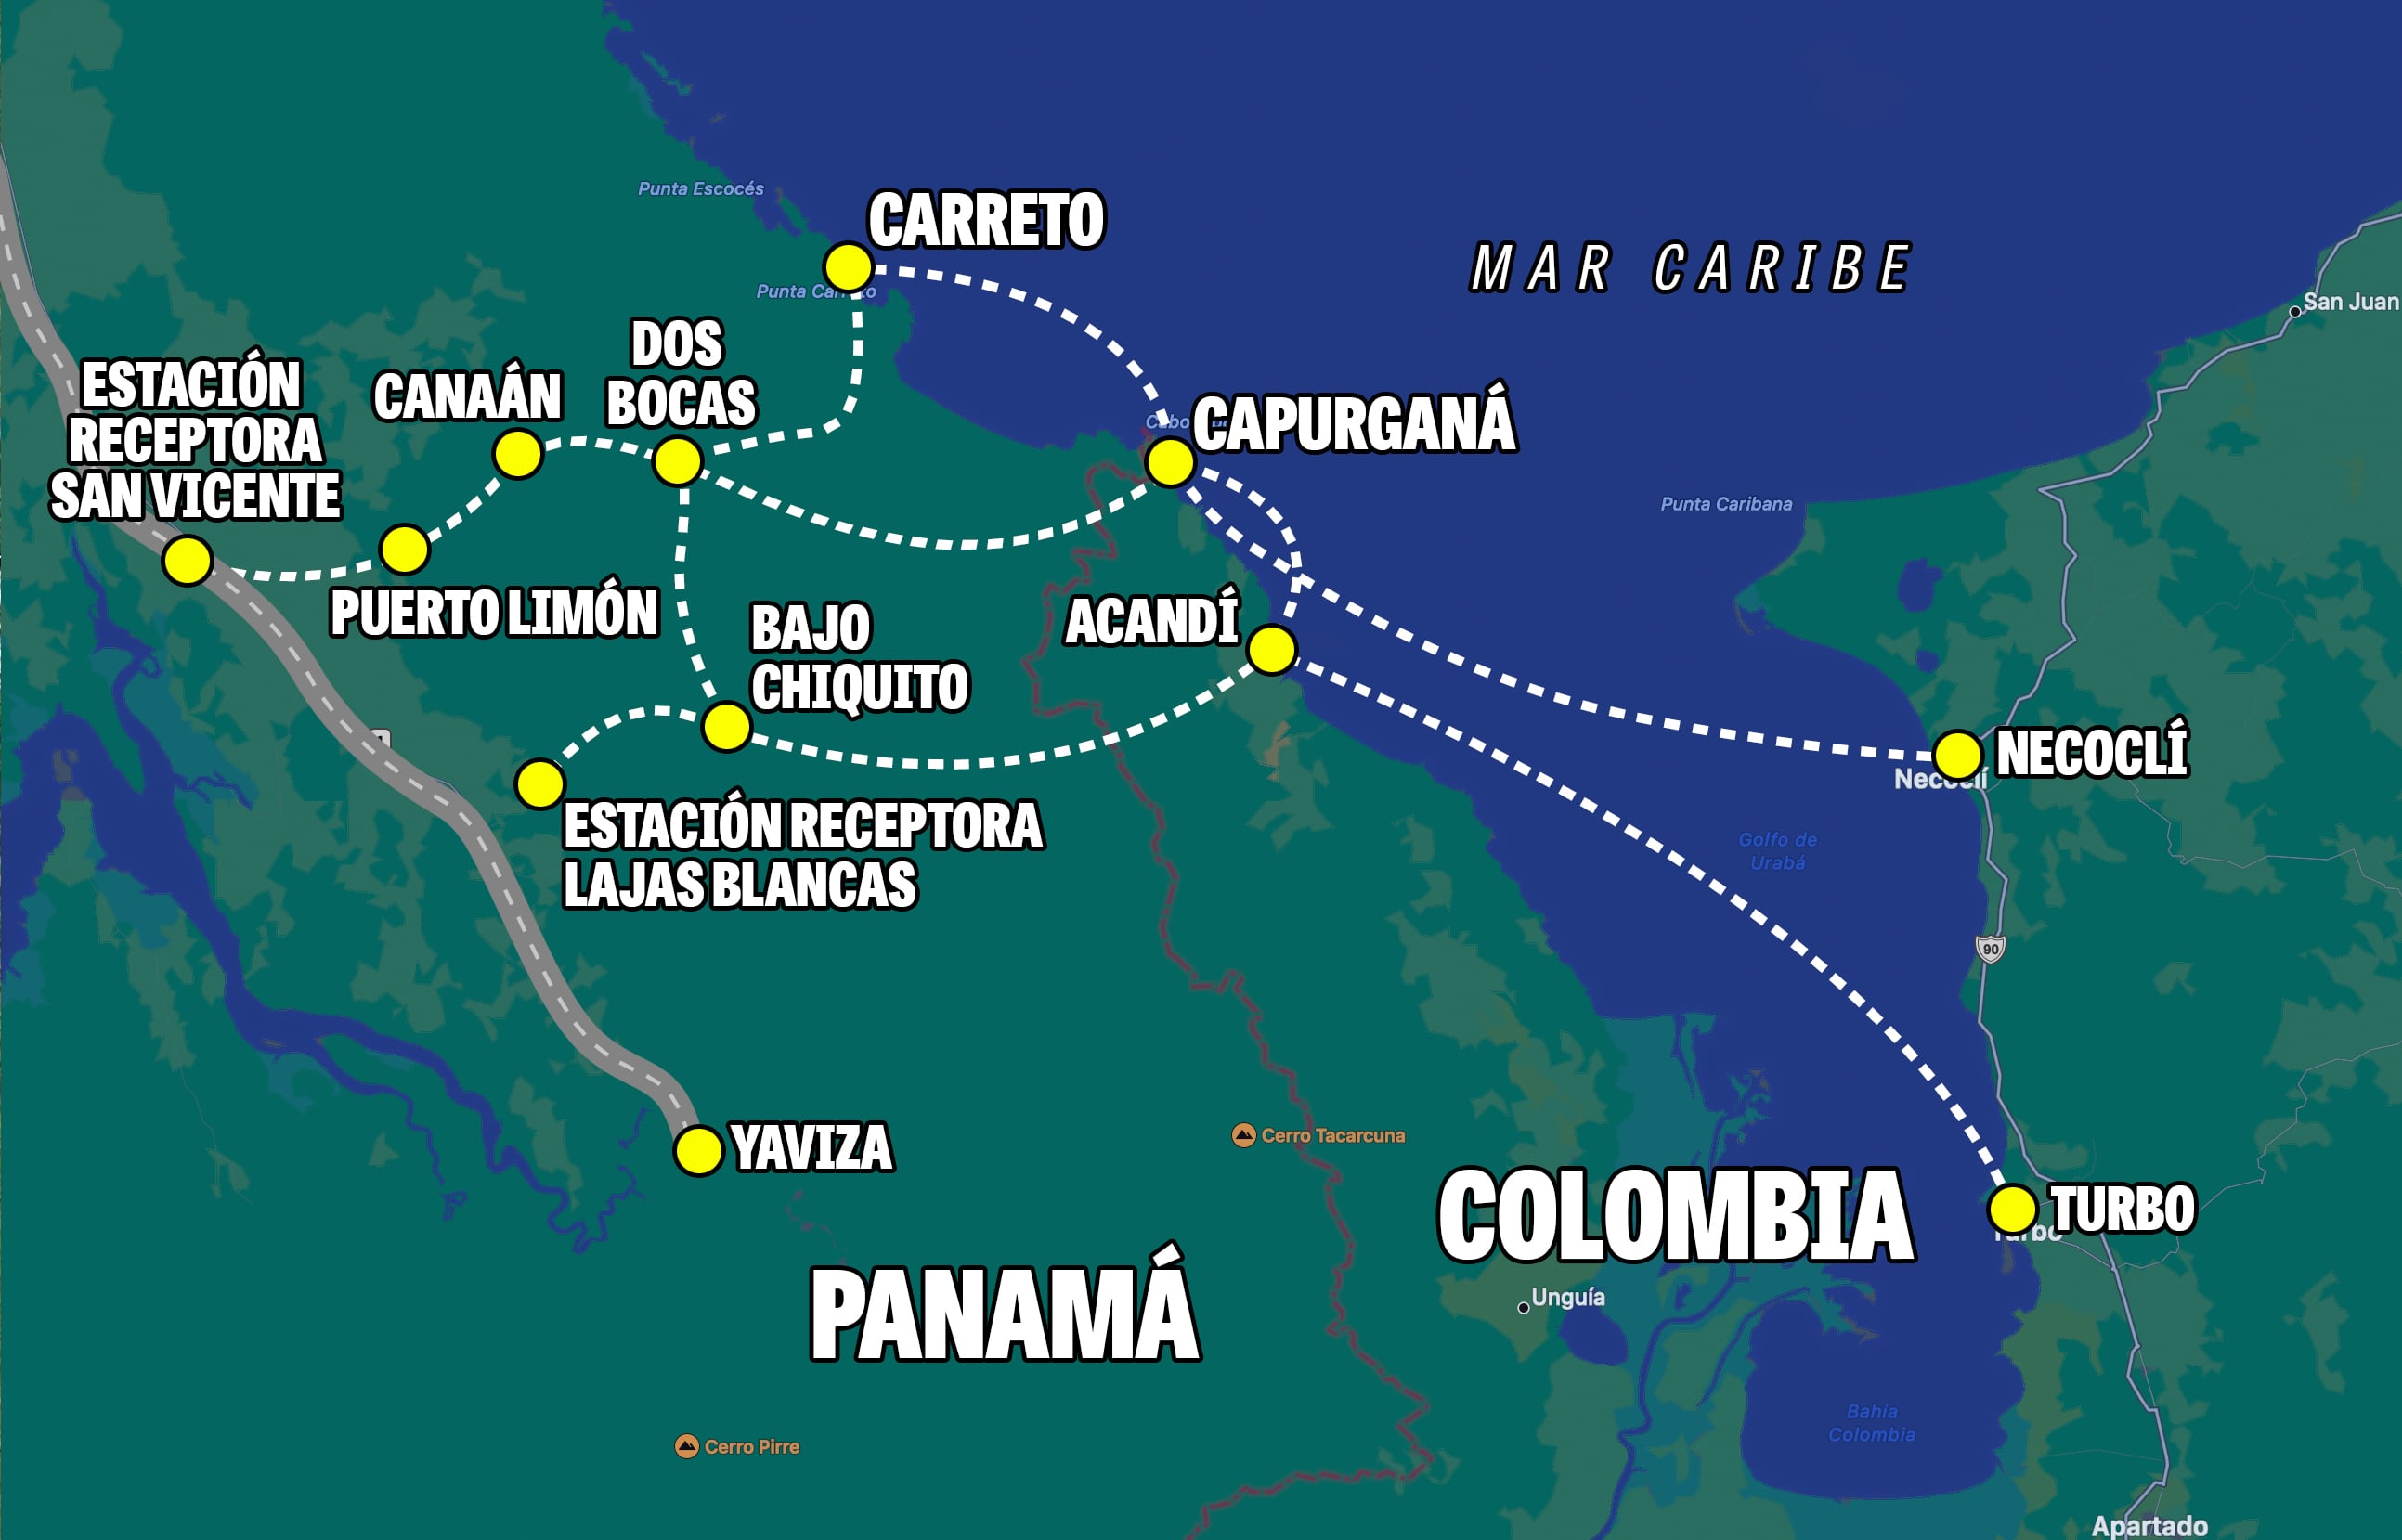 Mapa de la ruta de migrantes desde Colómbia a Panamá por mar y atraves del tapón de Darién. Ilustración Alexander Arosmena